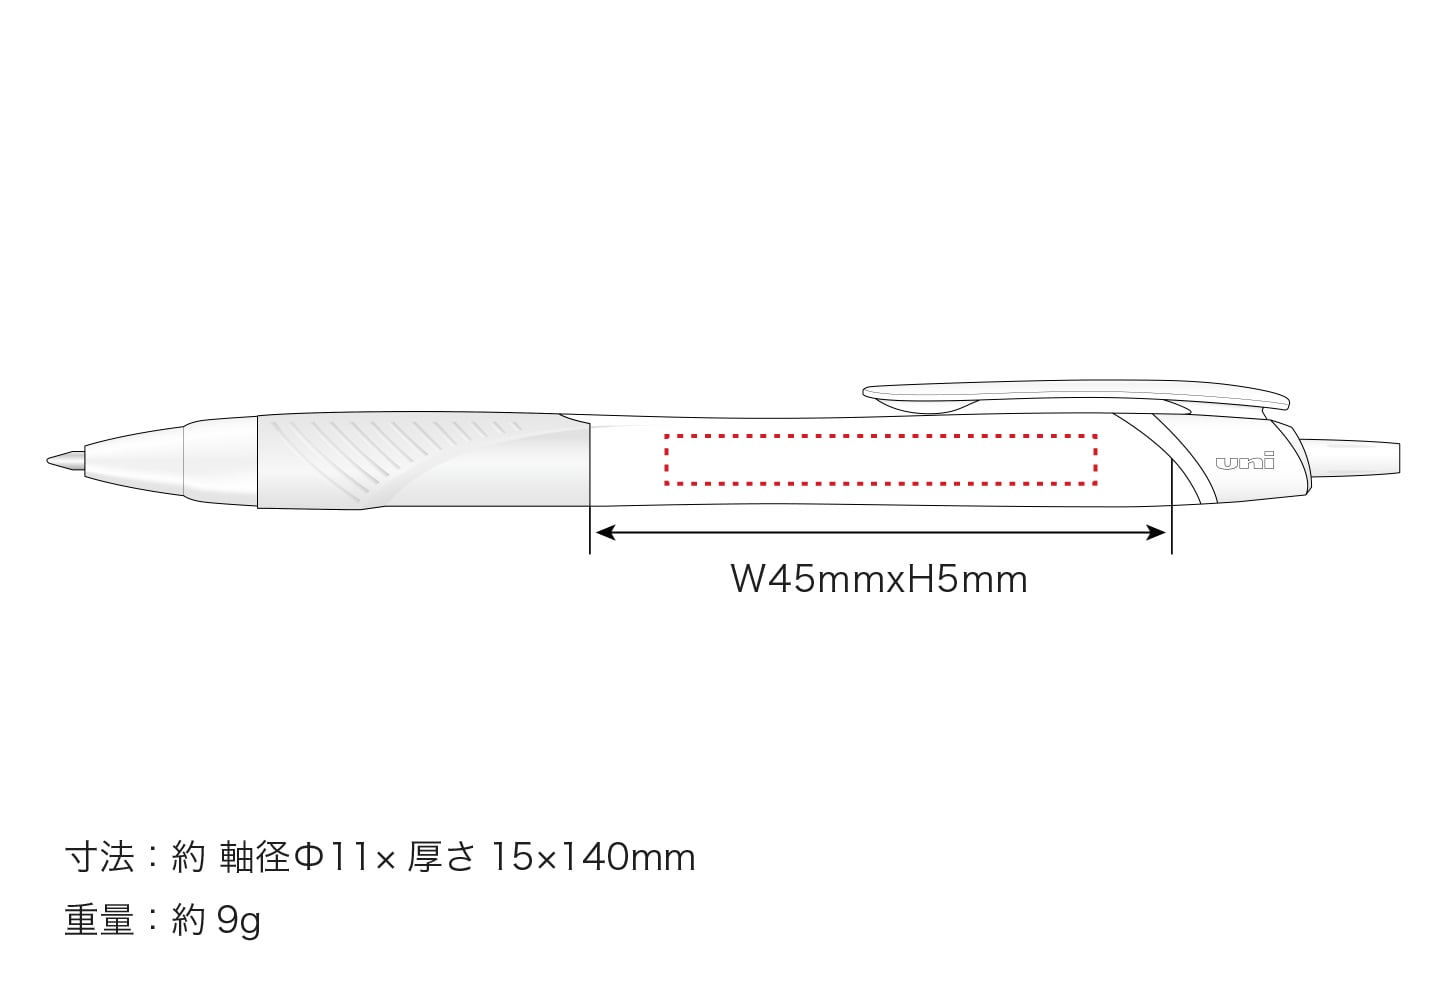 単色ボールペン 0.5mmの寸法と重量のイメージ